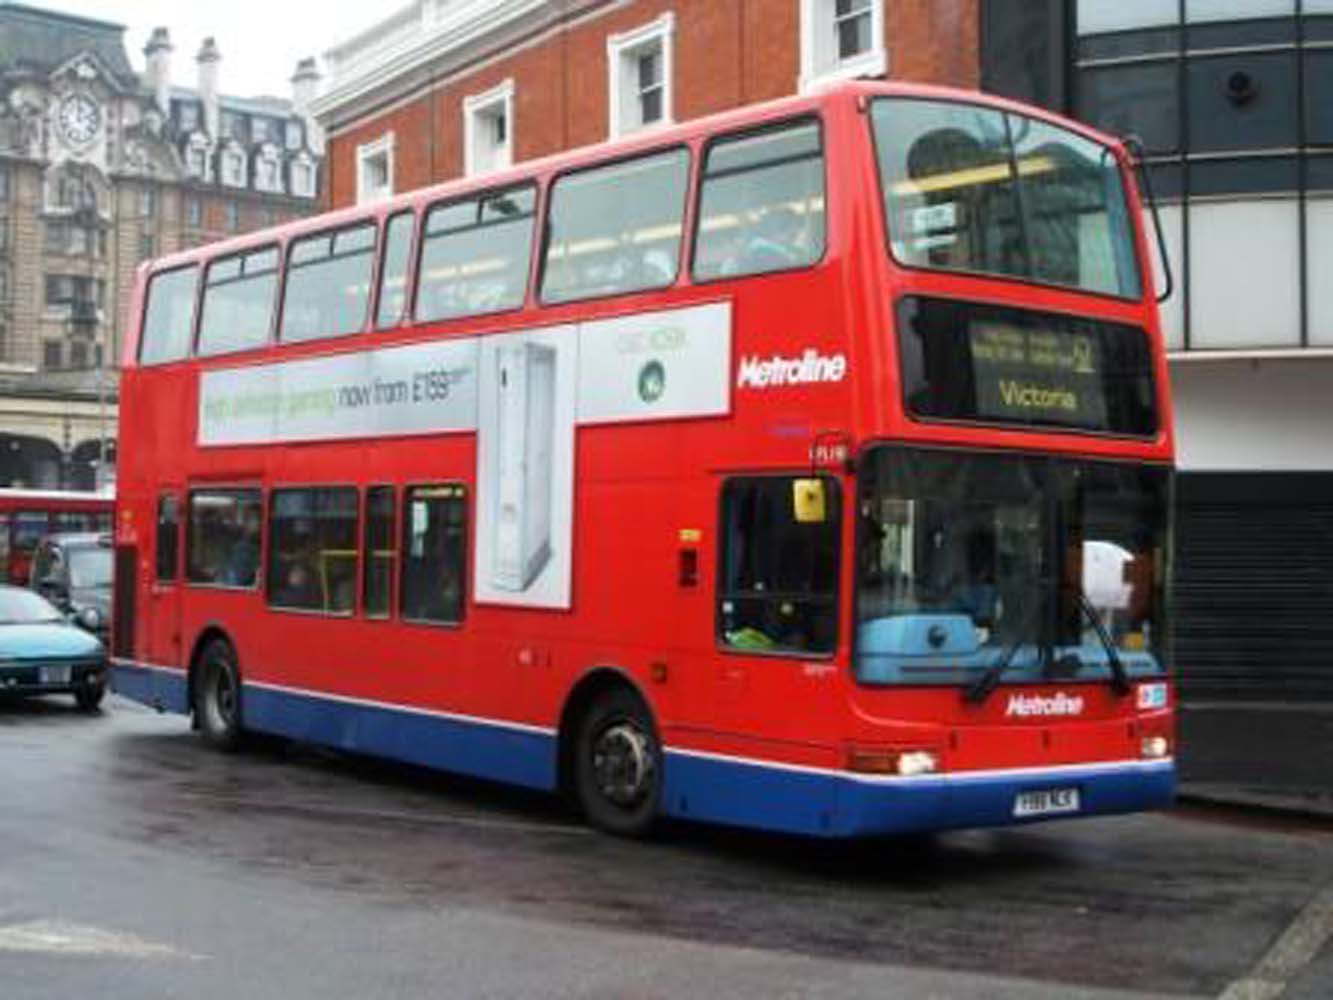 Londra'da belediye otobüslerinin yeni yakıt kaynağı: Kahve - Londra Ga...